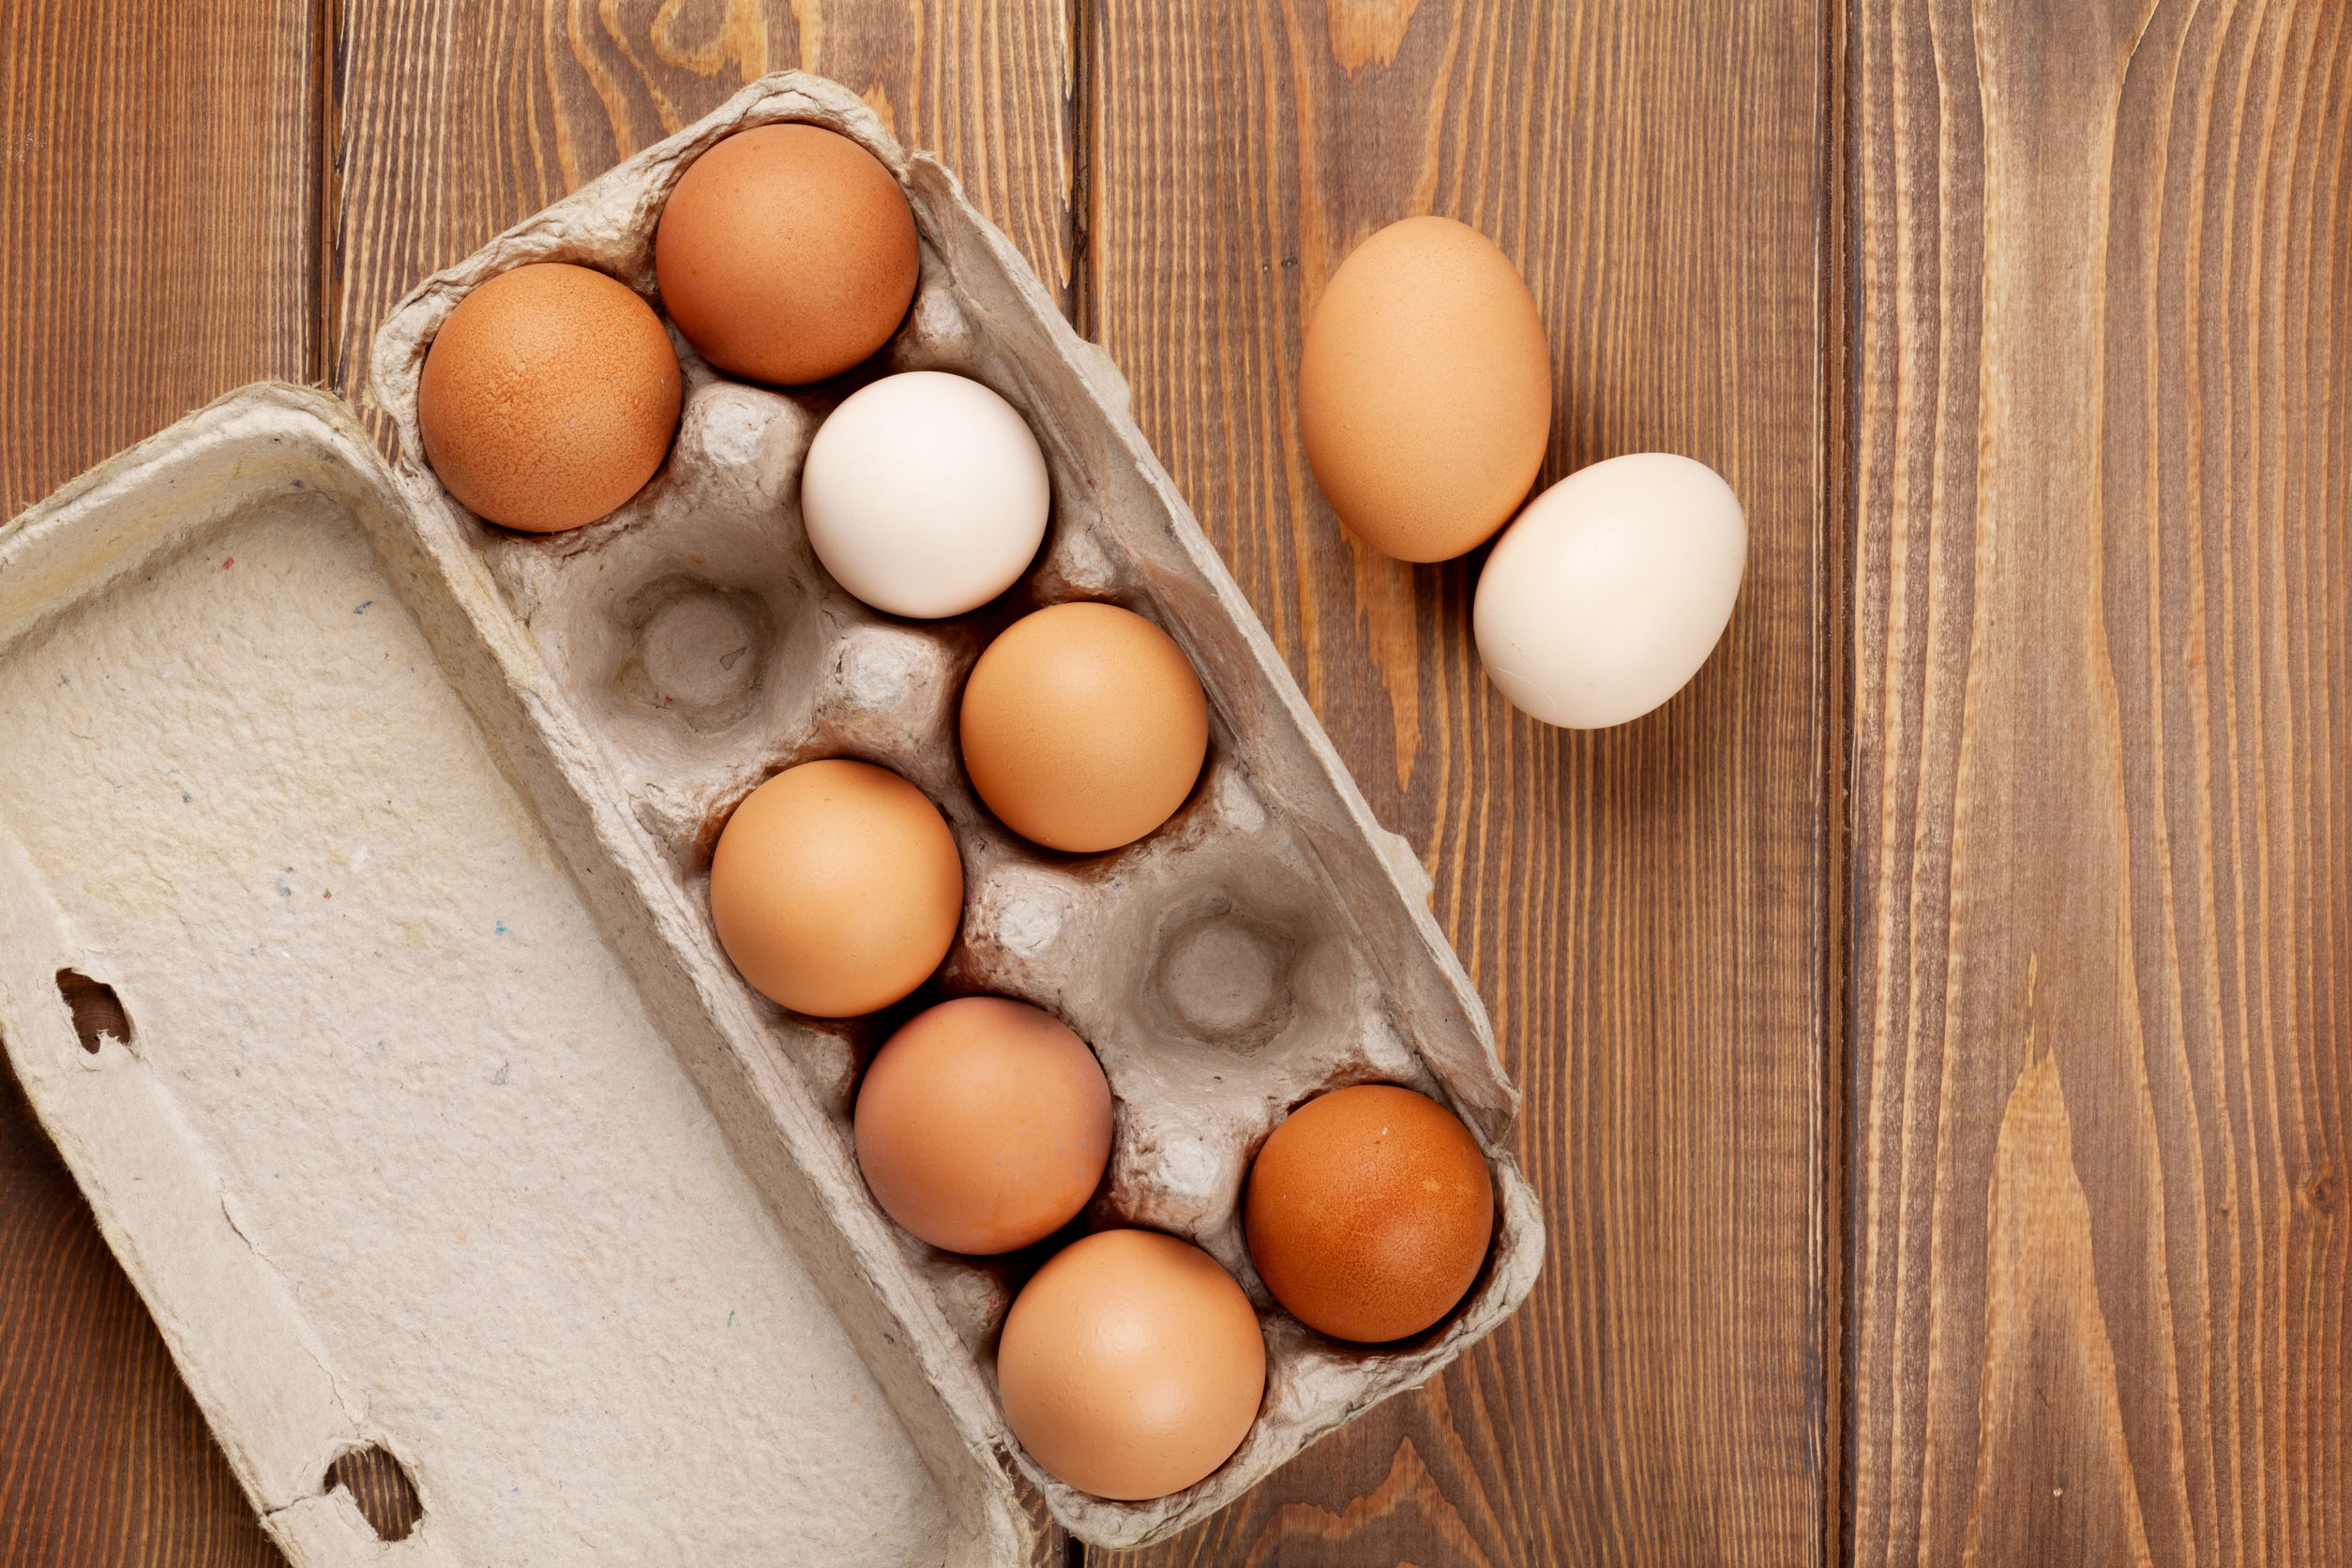 Afinal, comer ovos todos os dias faz mal ou não?